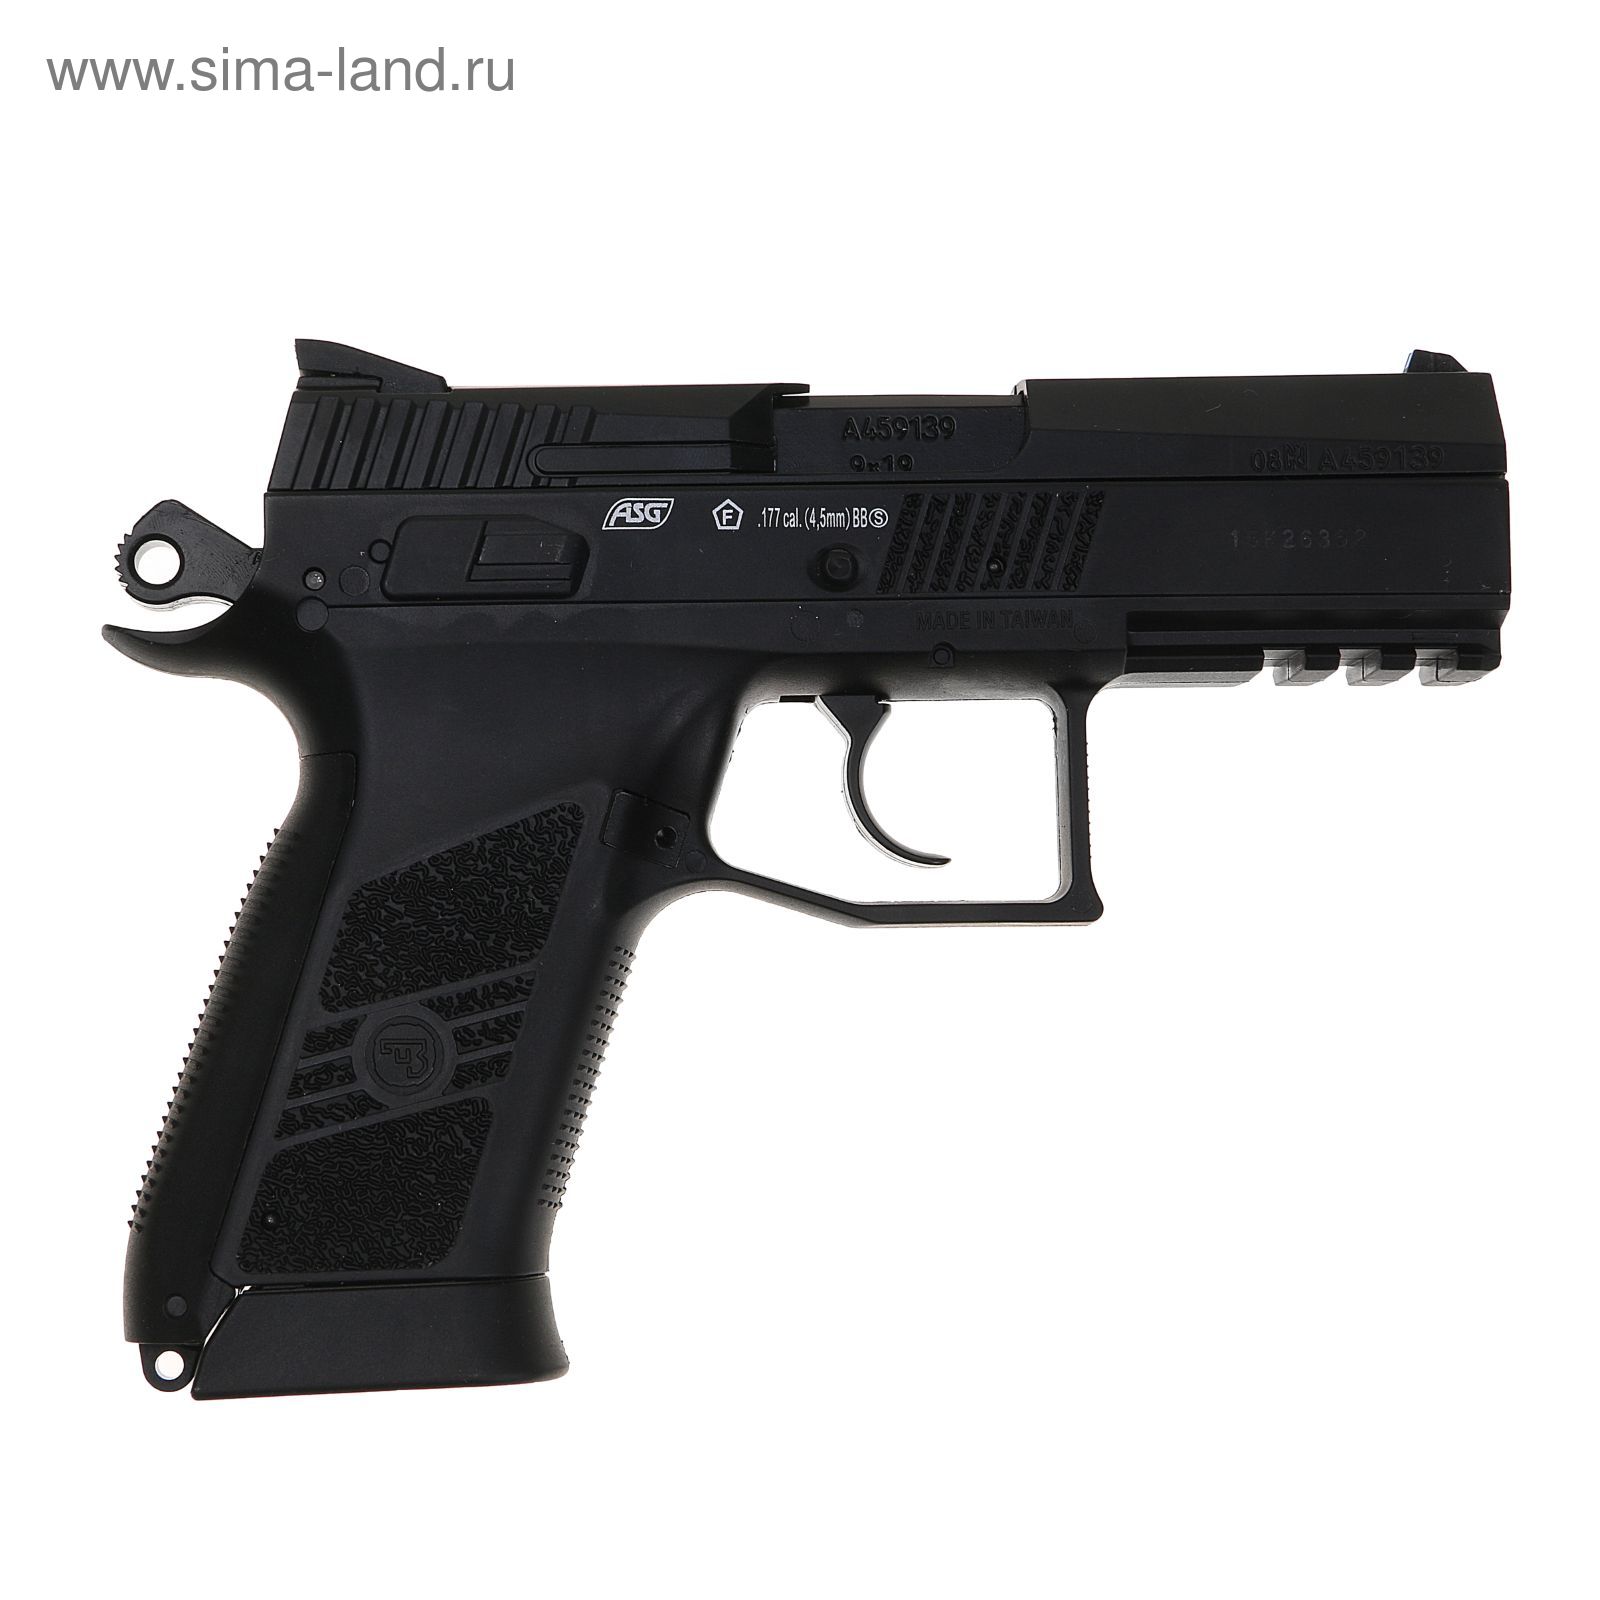 Пистолет CZ-75 P-07 DUTY  BLOWBACK  металл / черный ( 17 ВВ / полуавтомат)